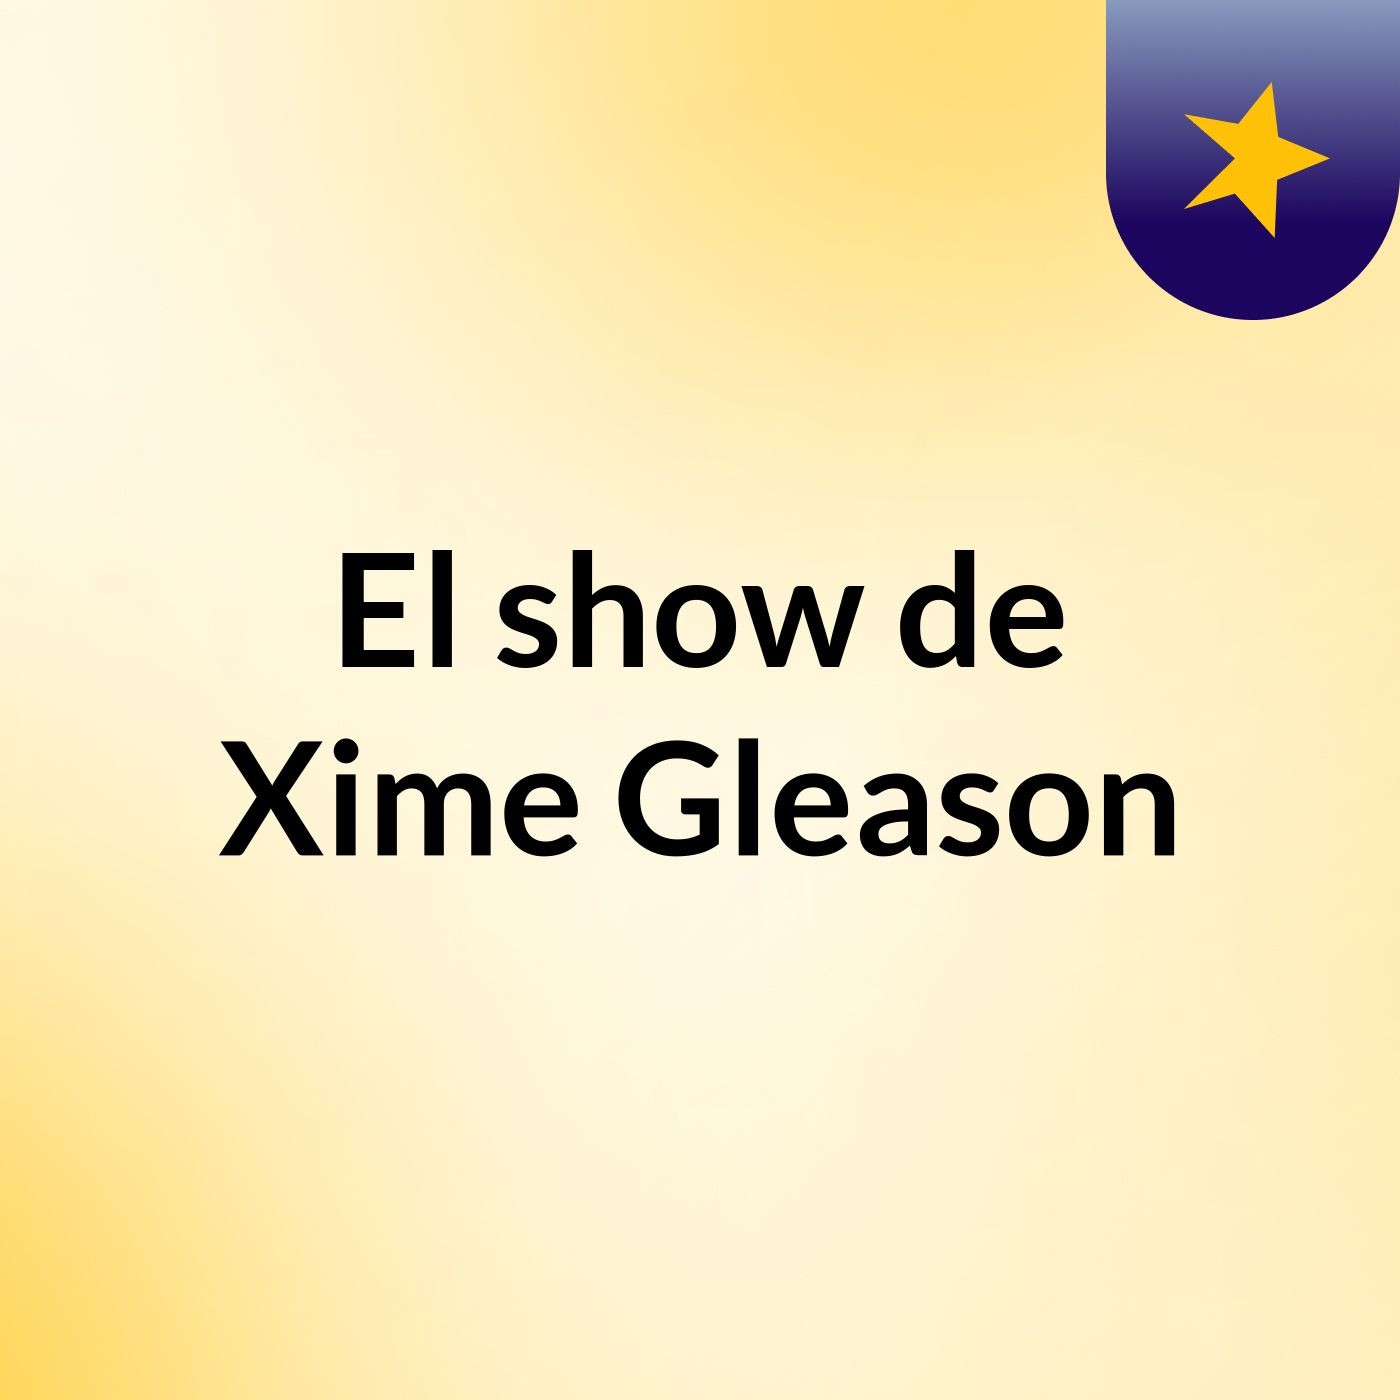 El show de Xime Gleason